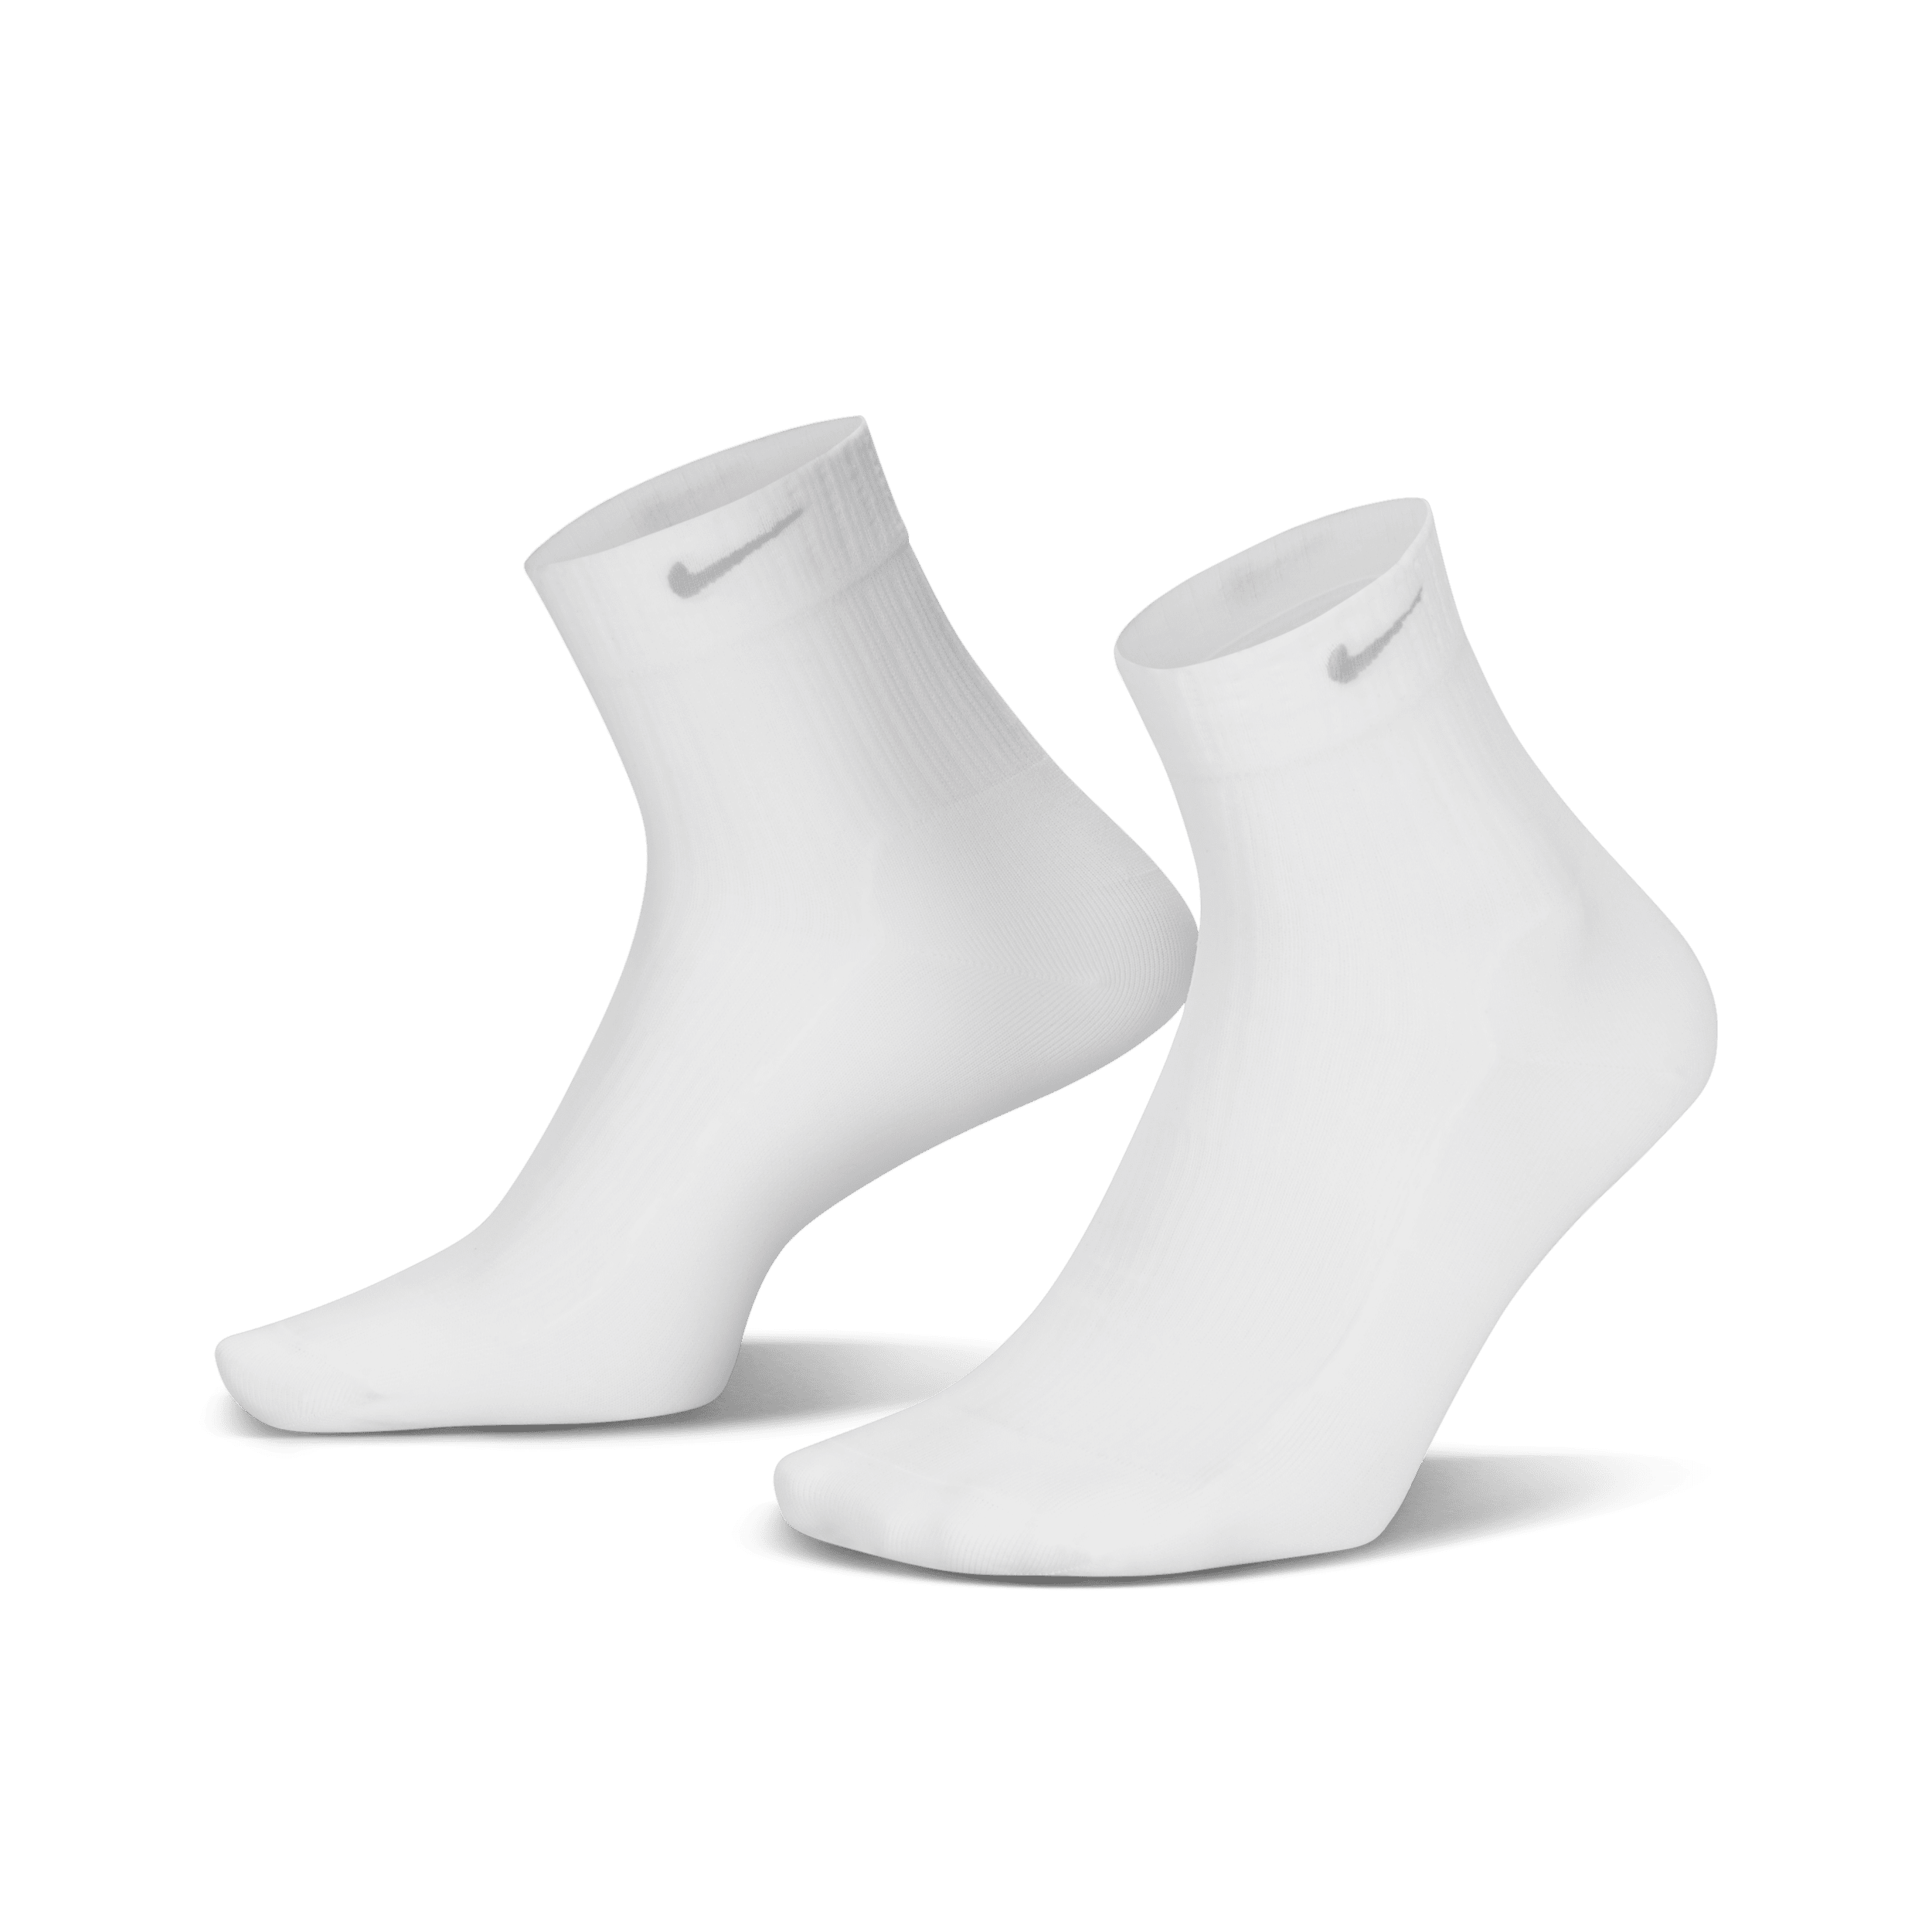 Calze velate alla caviglia Nike – Donna (1 paio) - Bianco